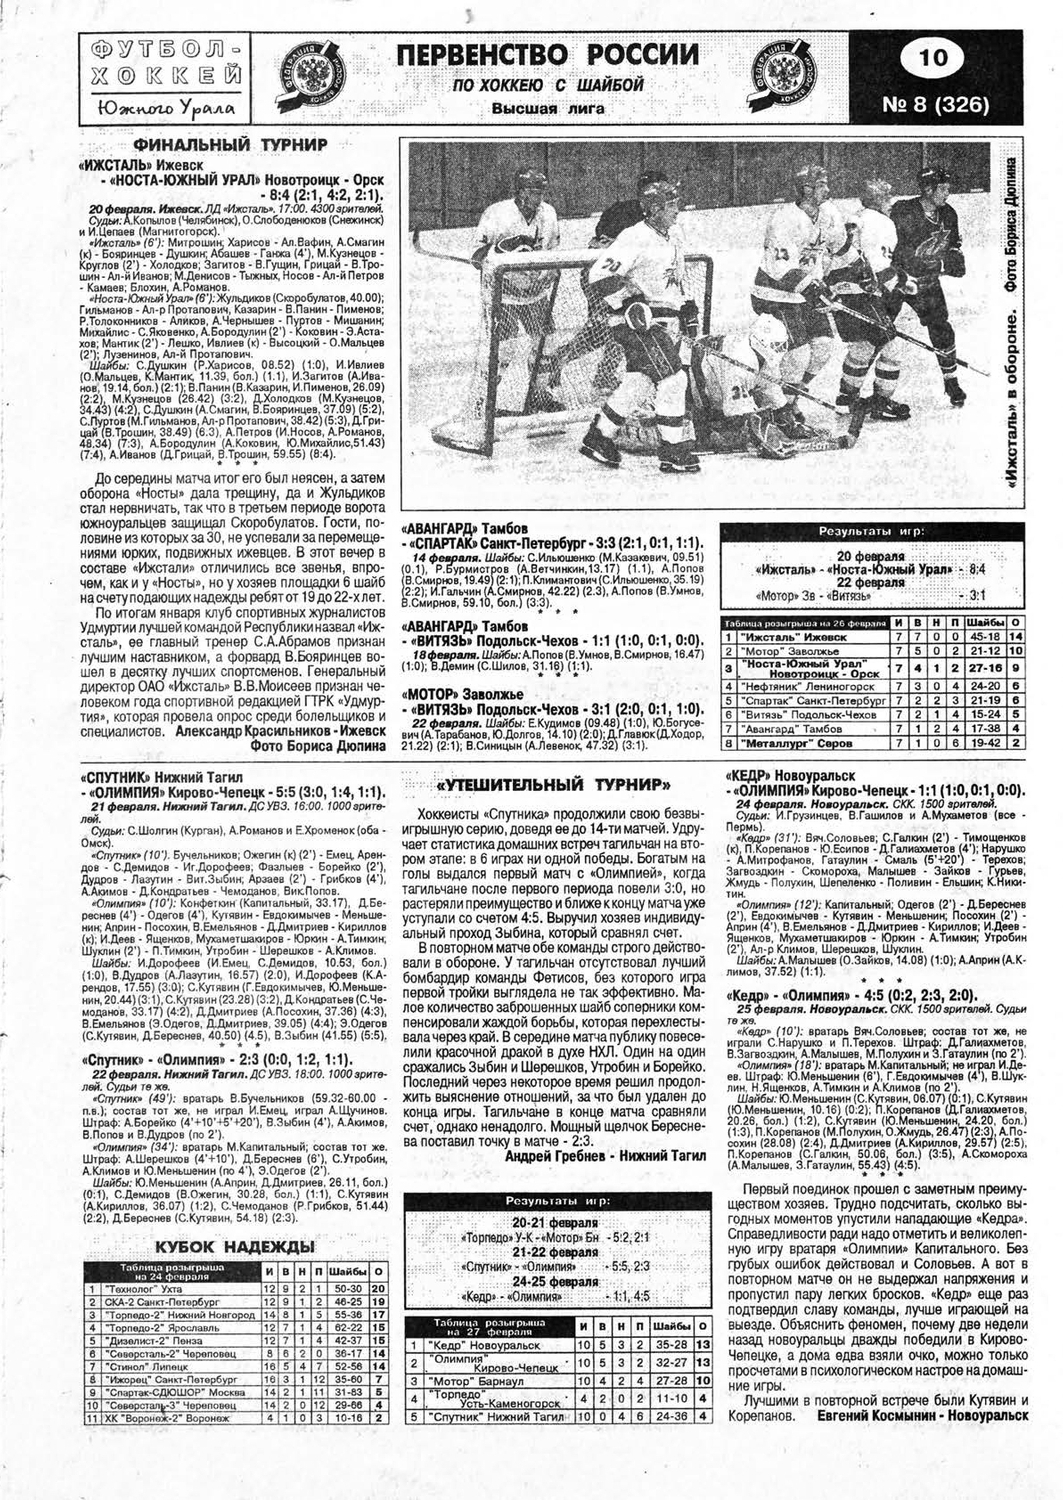 Еженедельник "Футбол-Хоккей ЮУ" от 1999г.